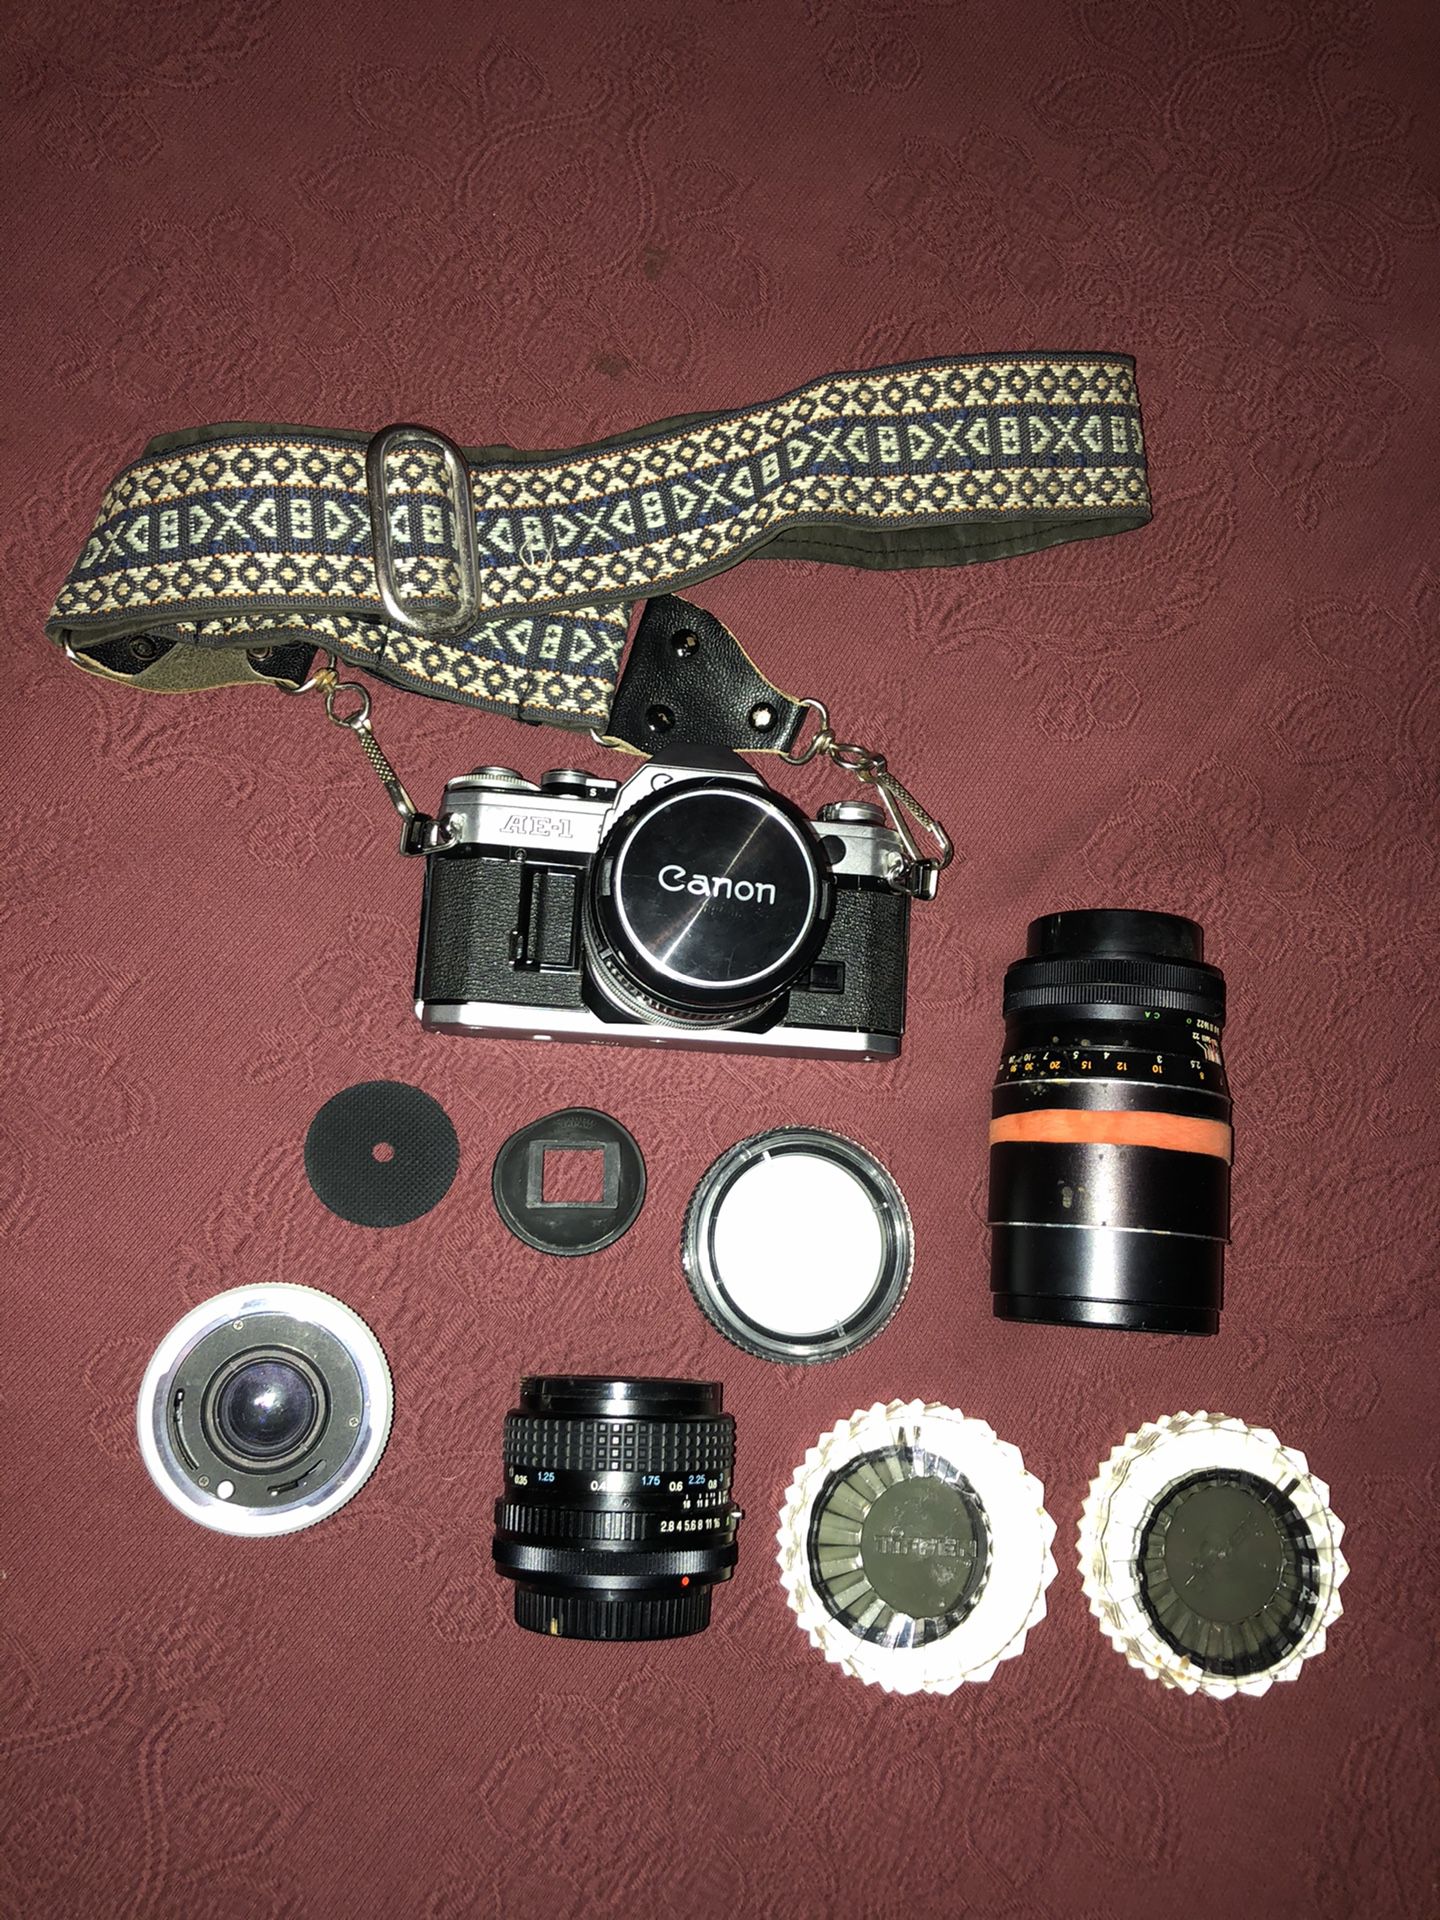 Canon AE-1 Camera w/ Accessories